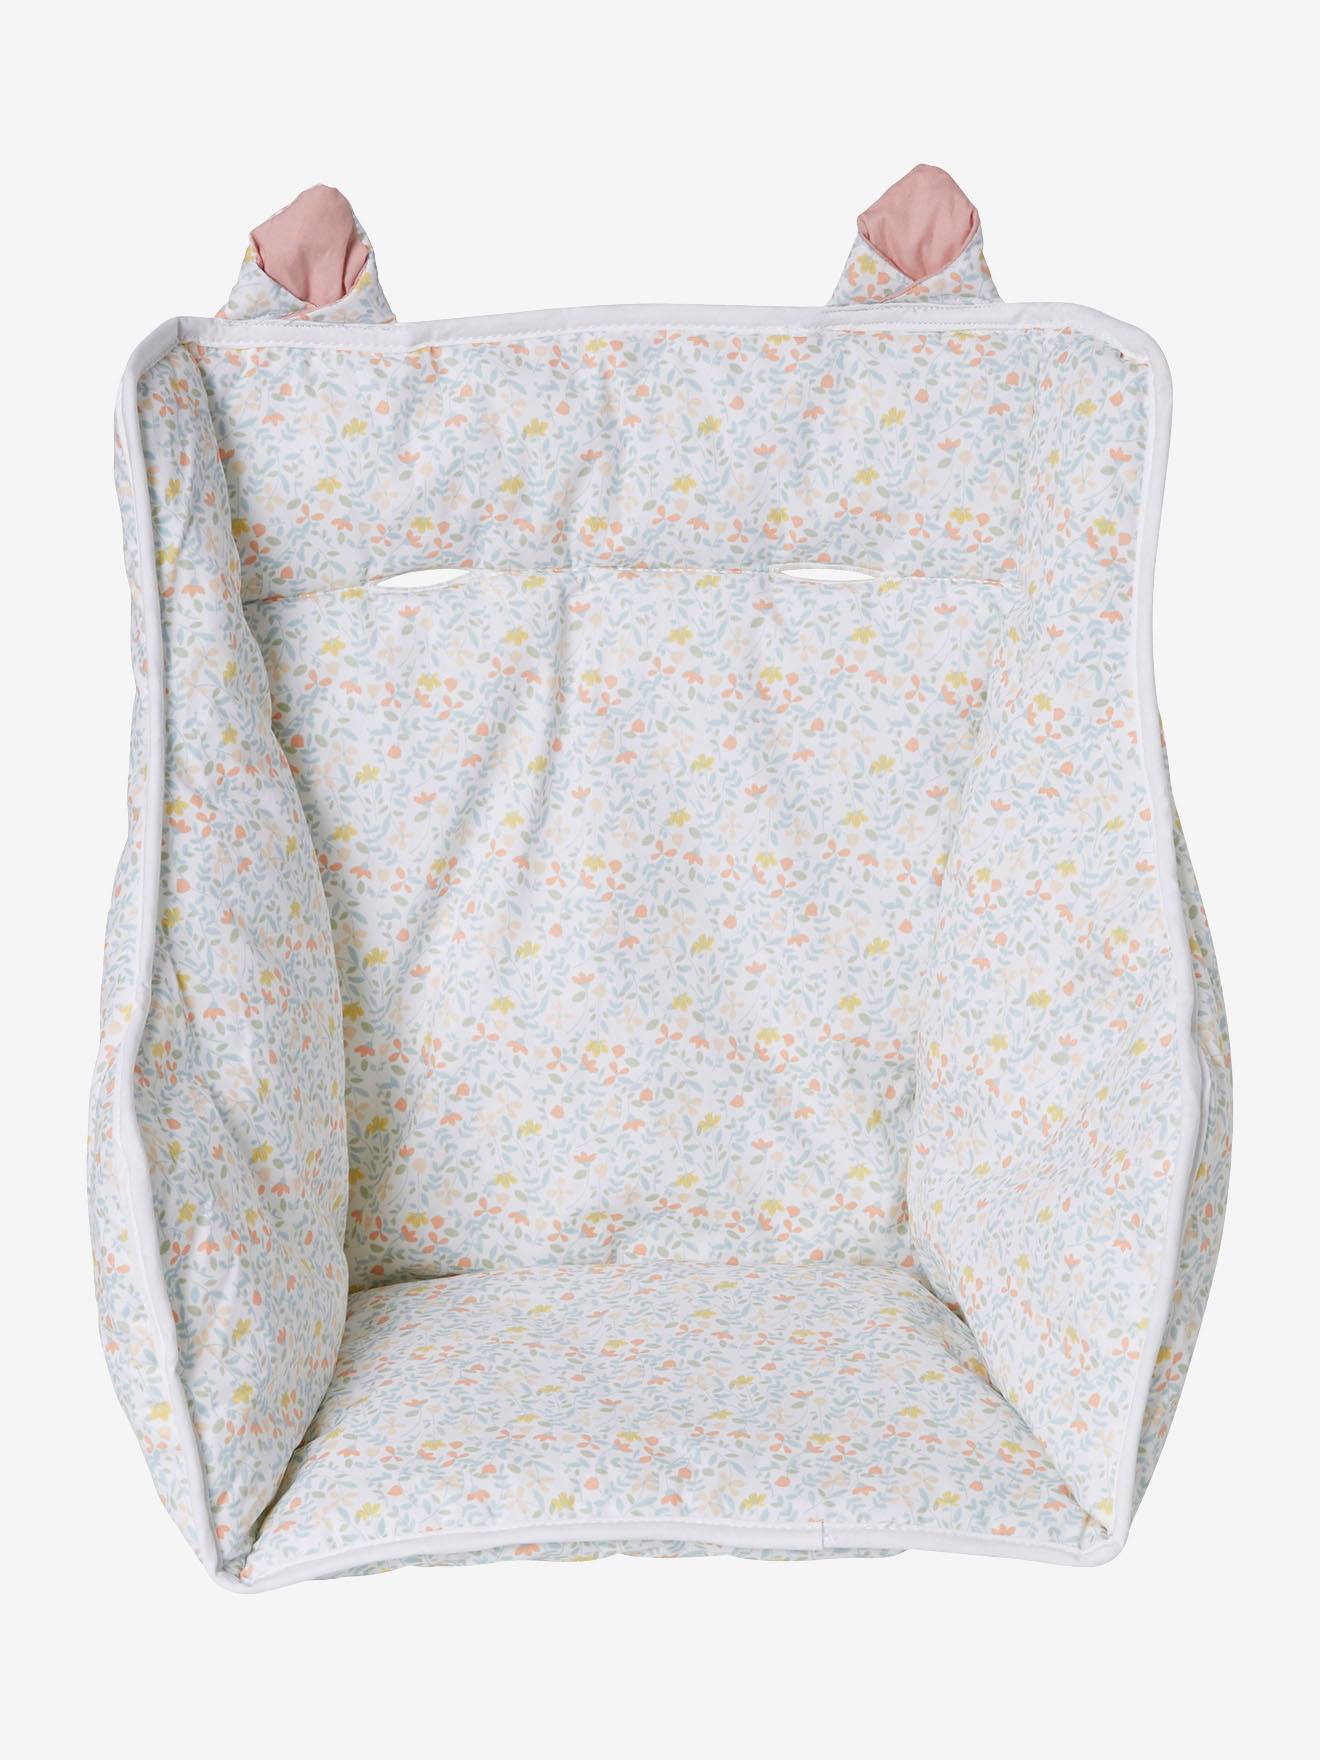 Vertbaudet High Chair Cushion White